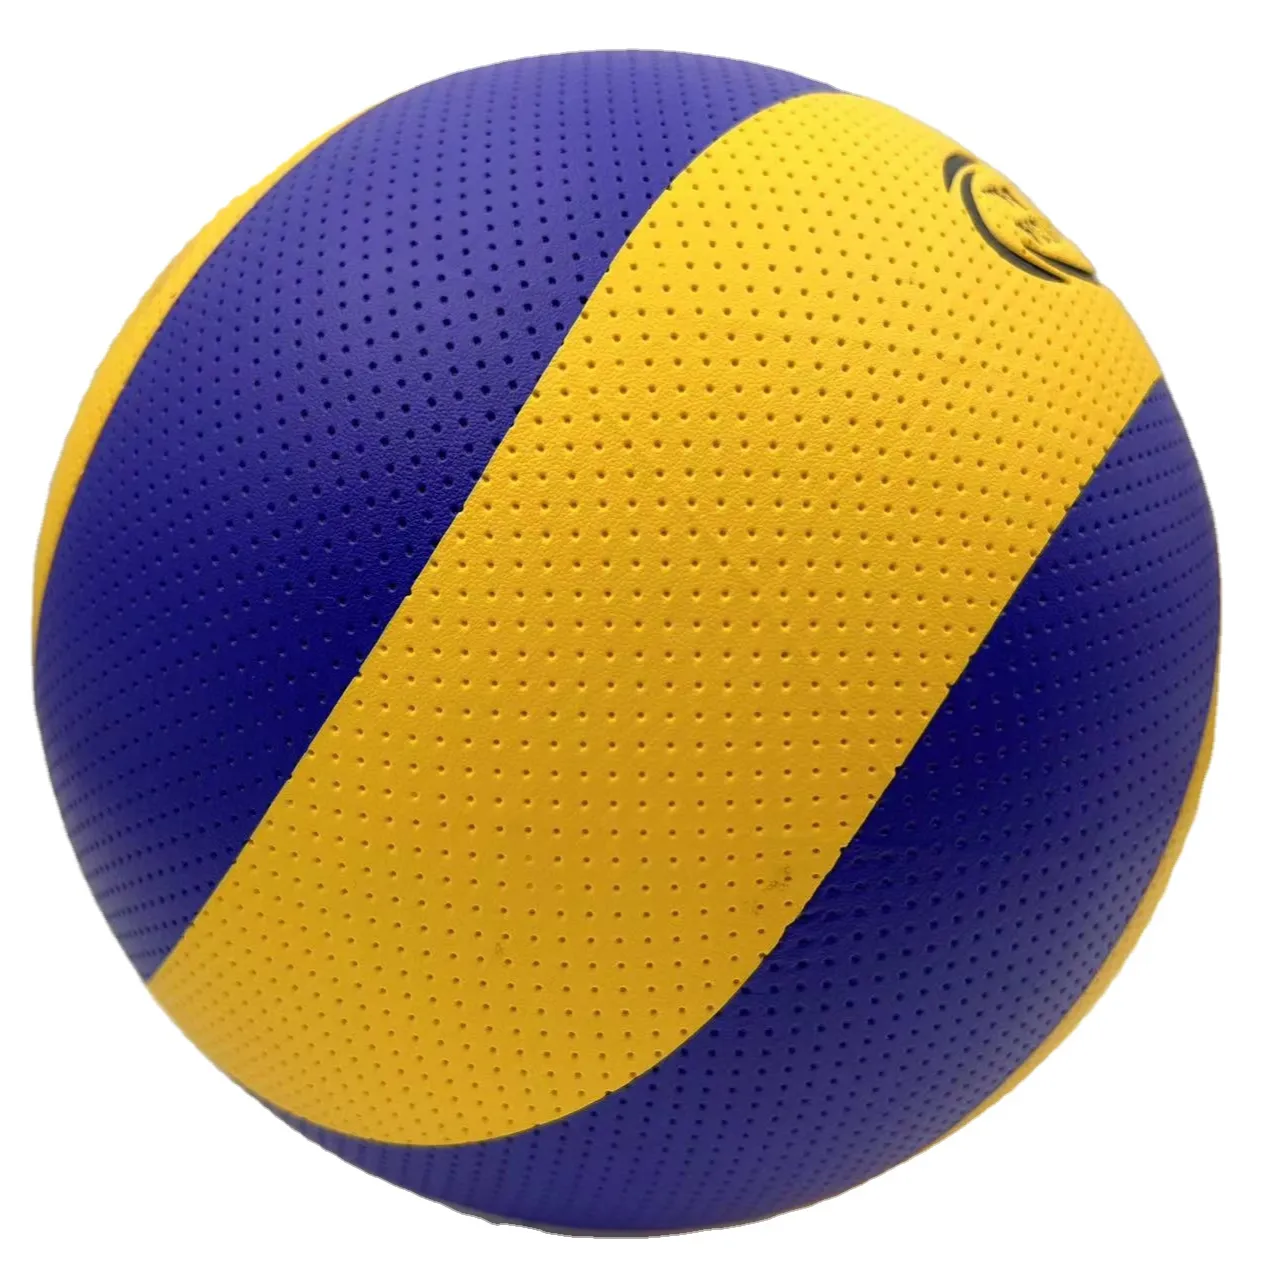 Sıcak satış toptan resmi boyut 5 voleybolu topu yüksek dereceli Pu pvc deri renkli voleybol